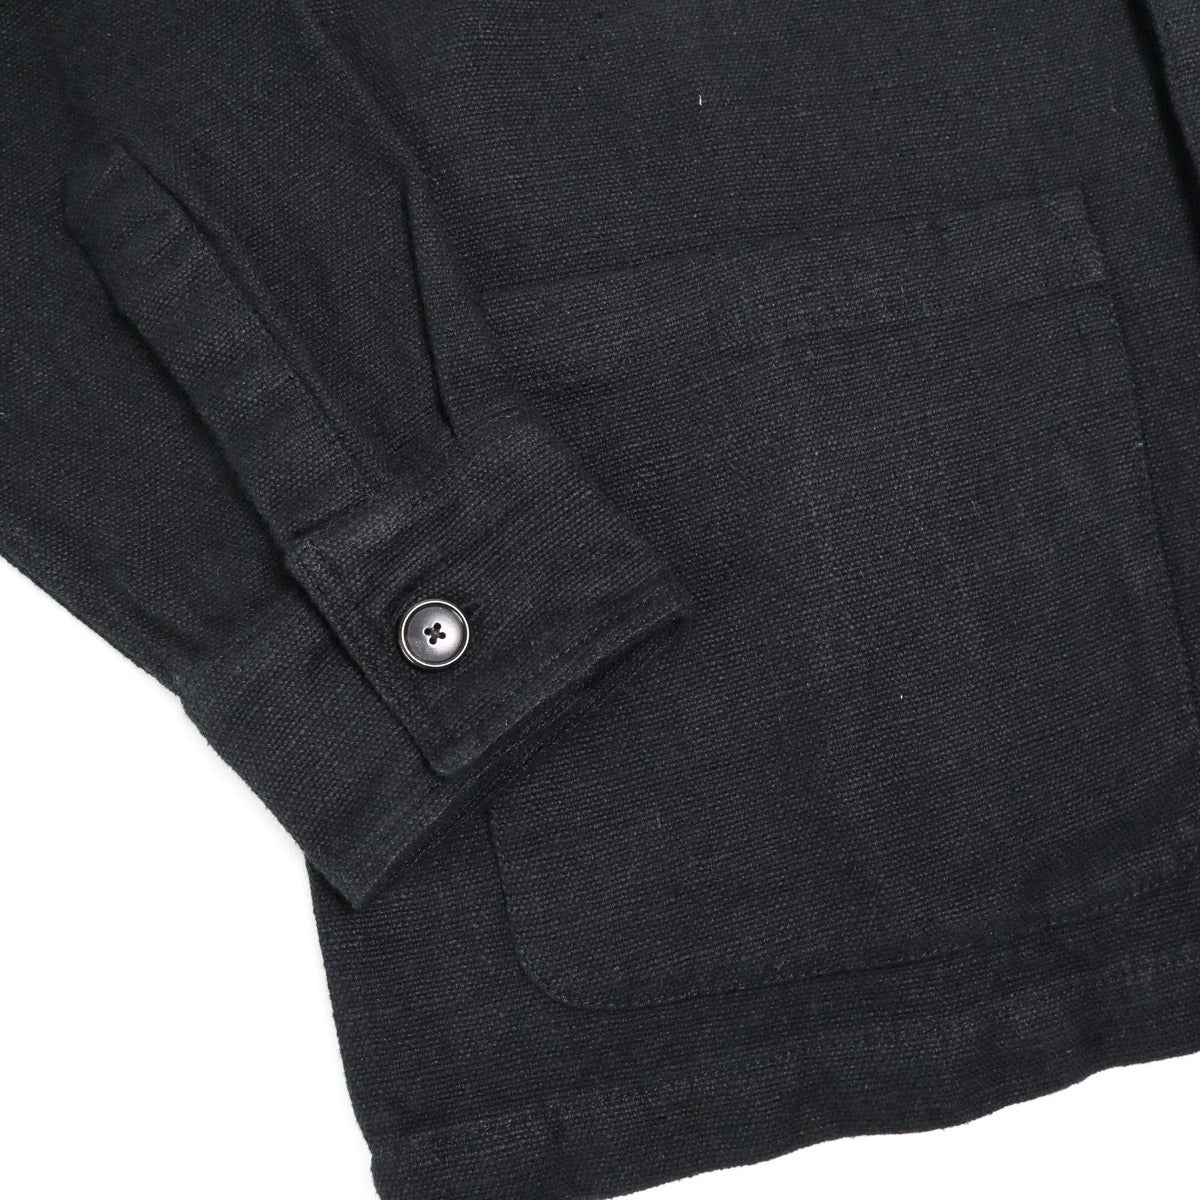 Shop Jacket Black Cotton/Linen